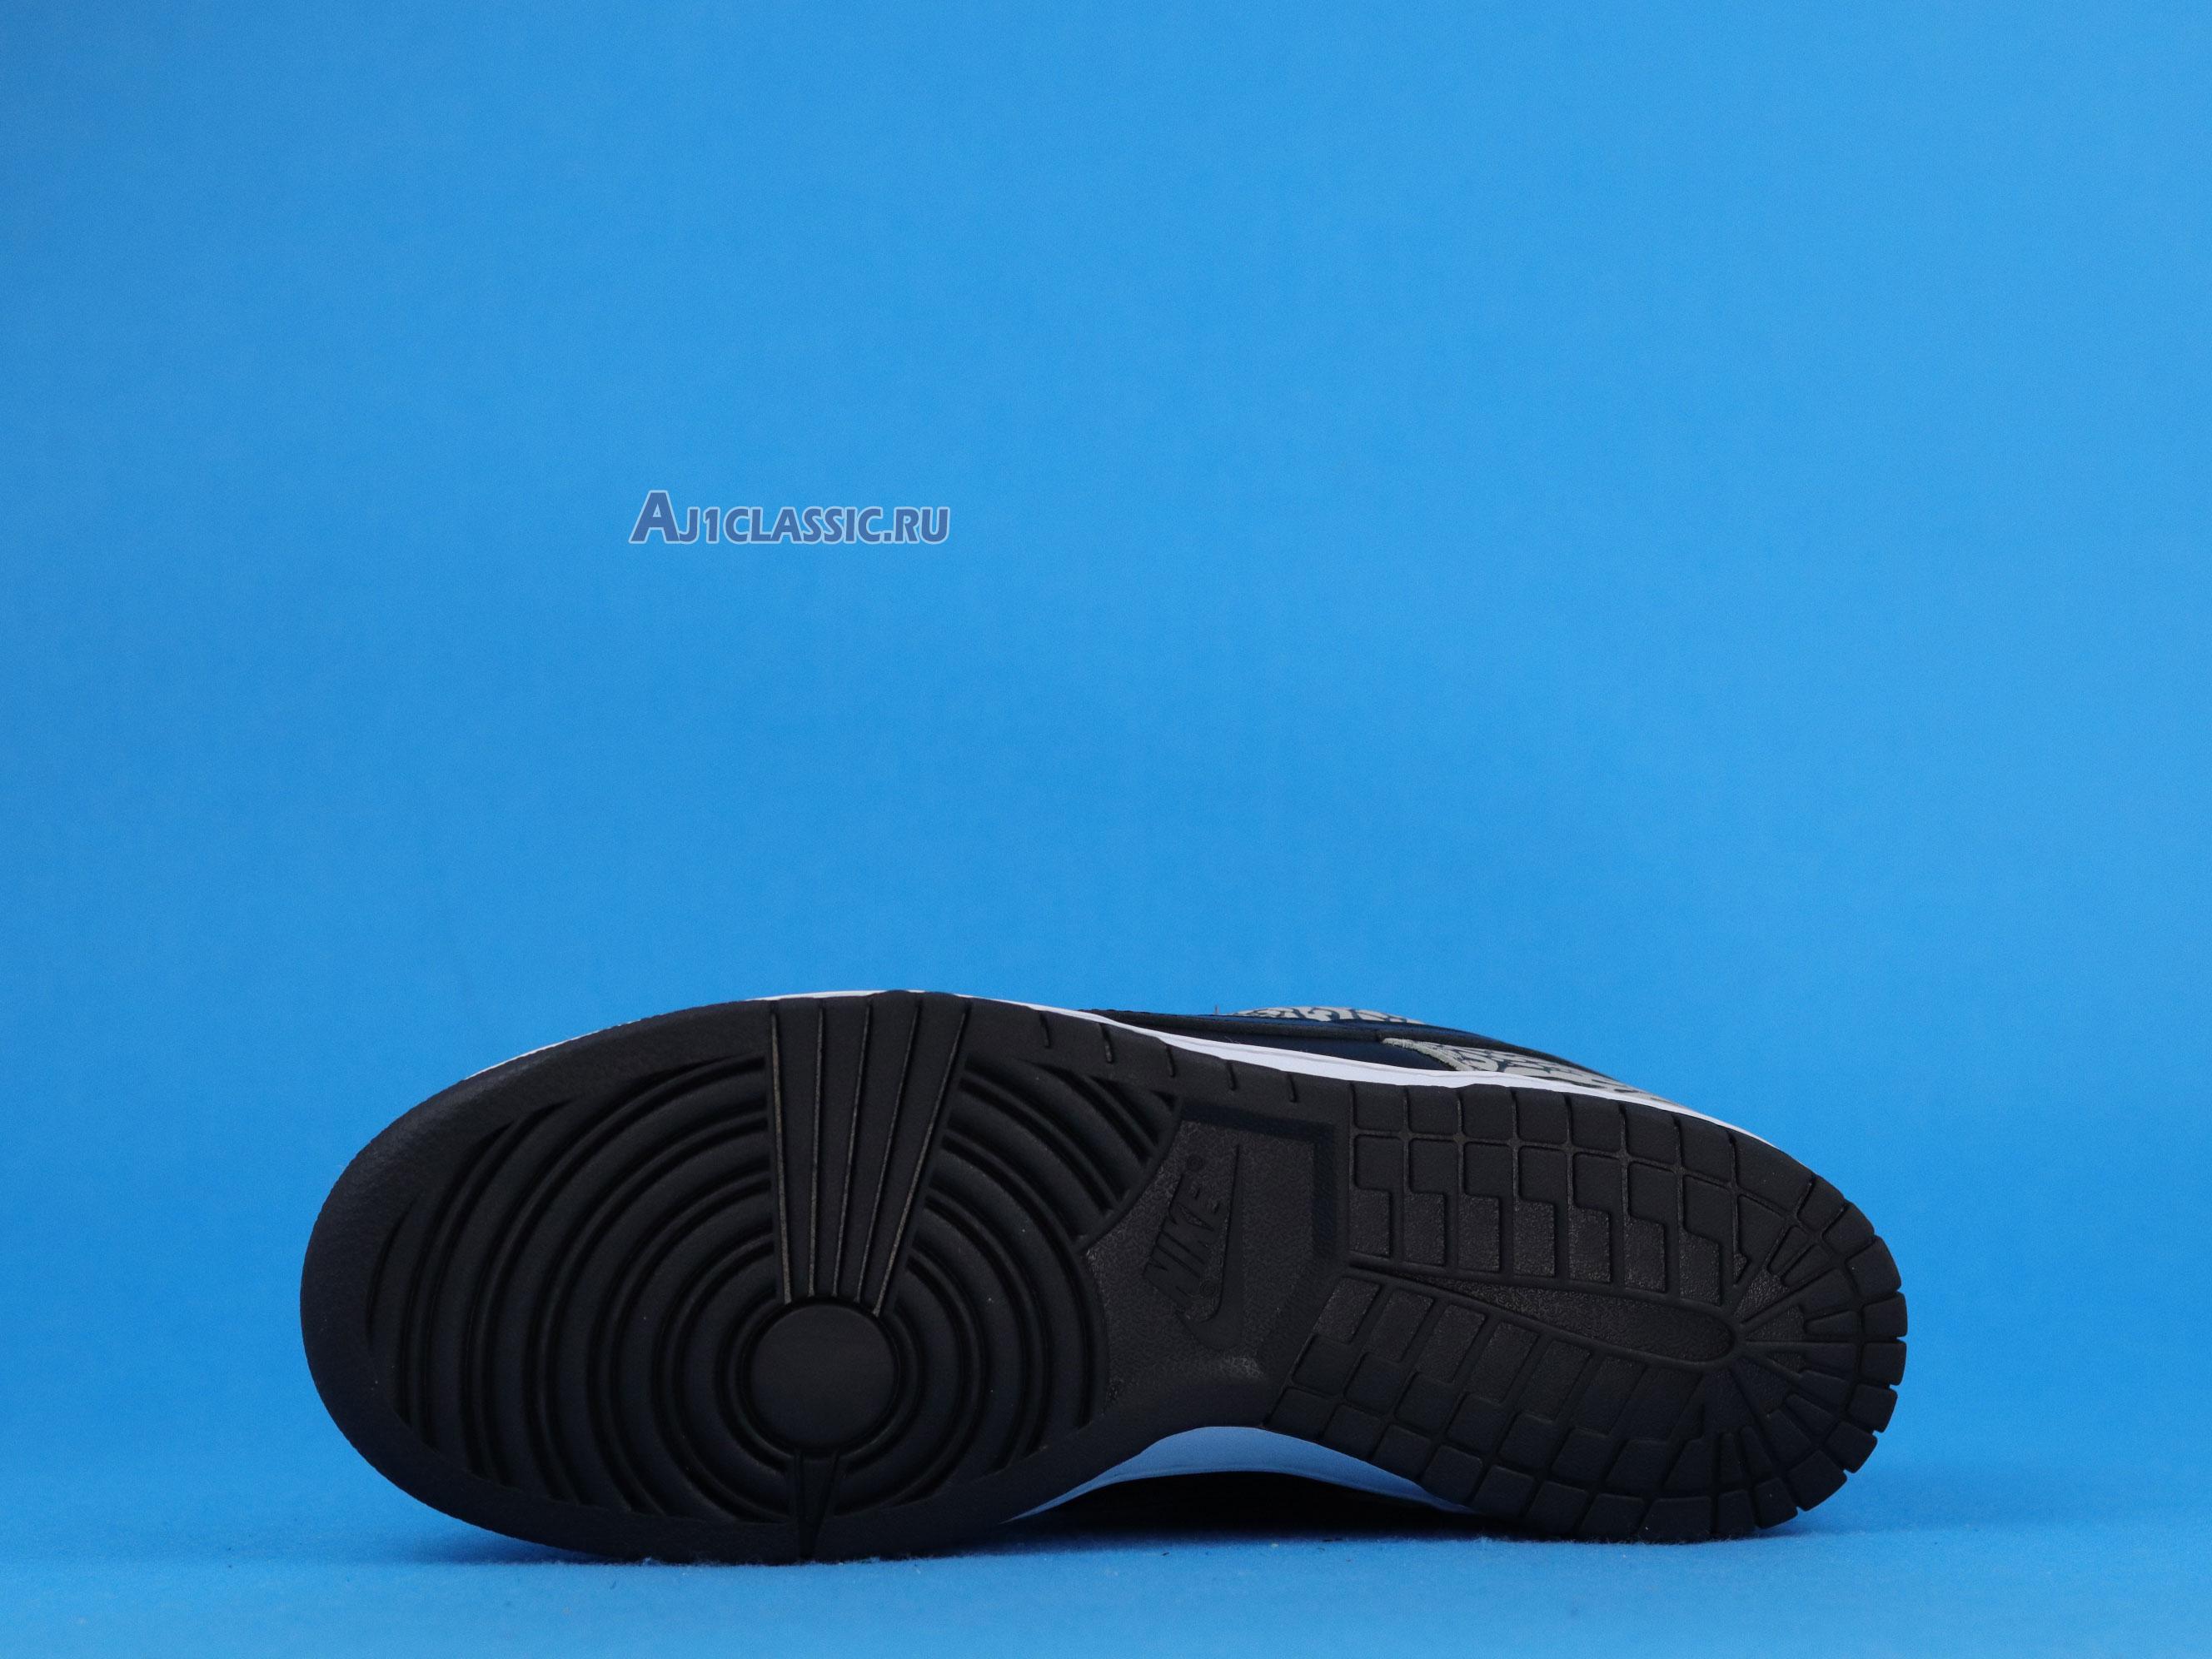 Supreme x Nike Dunk Low Pro SB "Black Cement" 304292-131